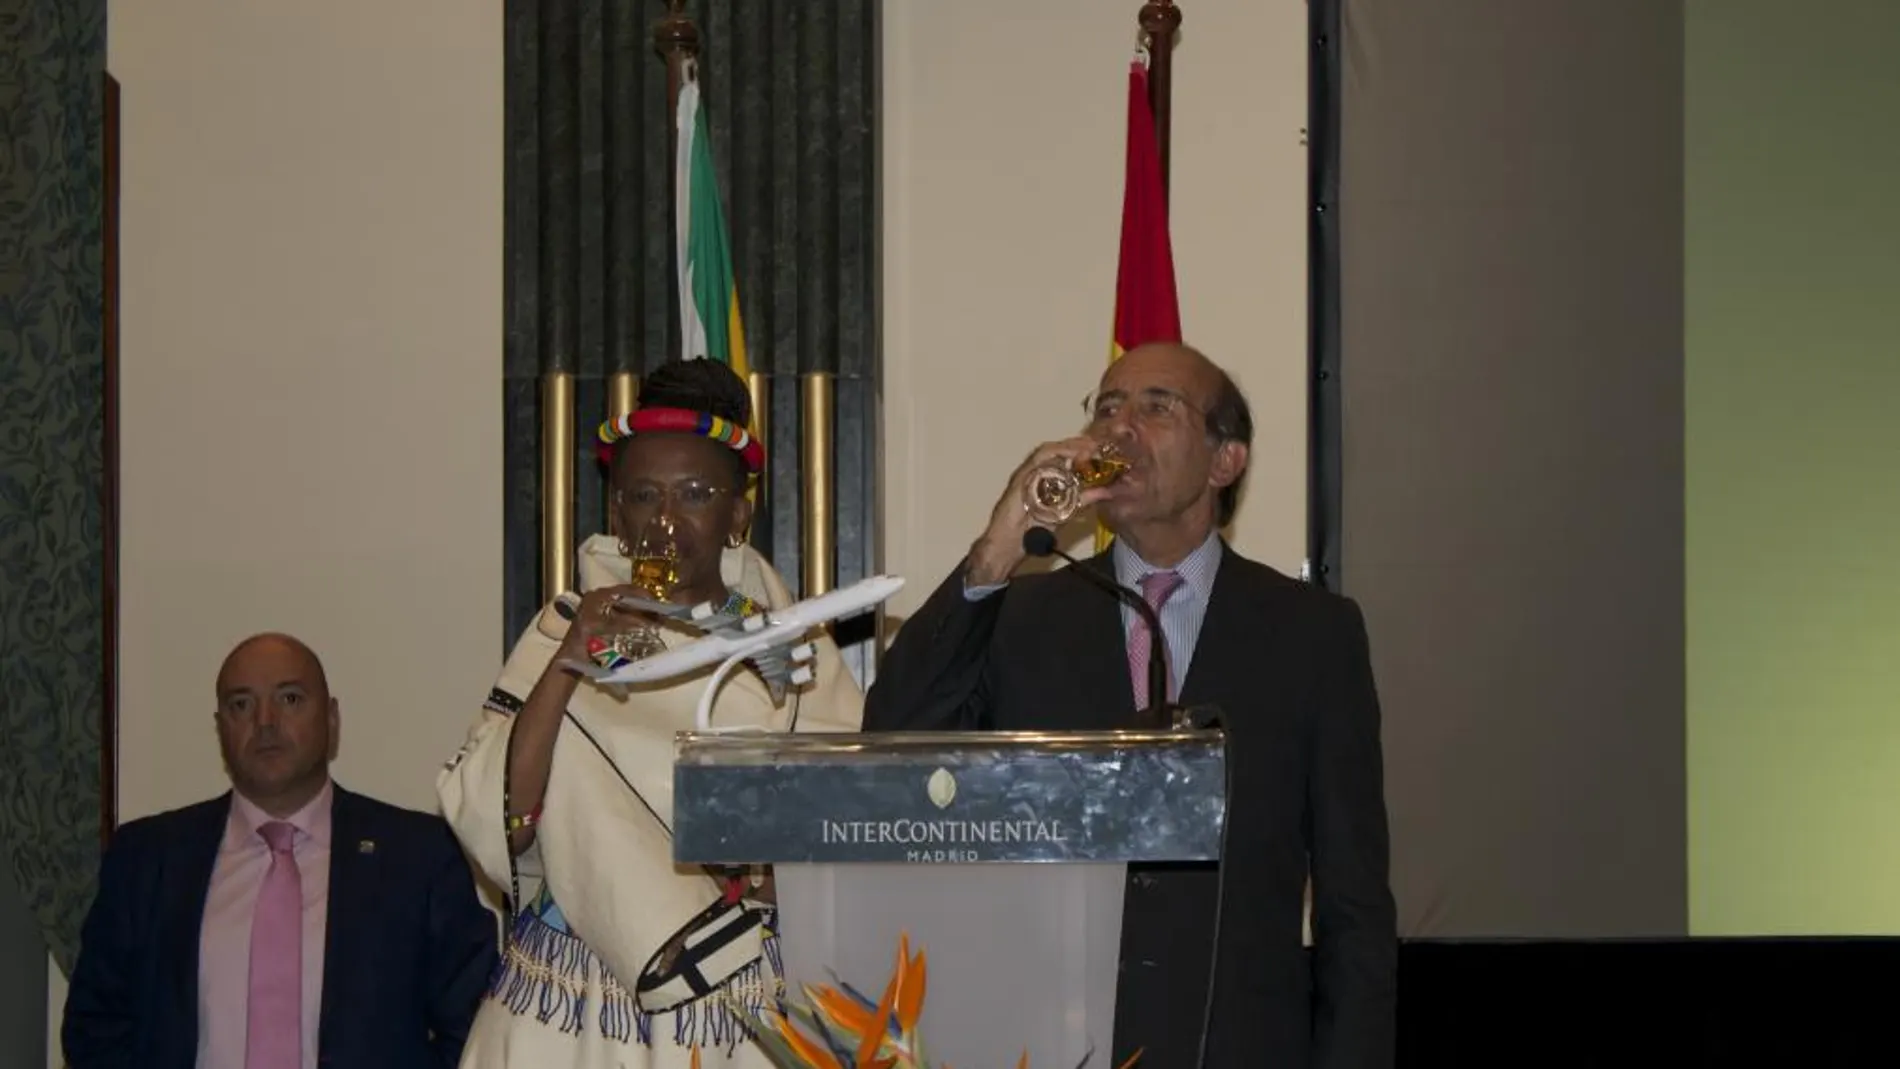 El Secretario de Estado de Asuntos Exteriores, don Gonzalo de Benito Secades, brindando por el Día Nacional de Sudáfrica, con la embajadora doña Fikile Sylvia Magubane